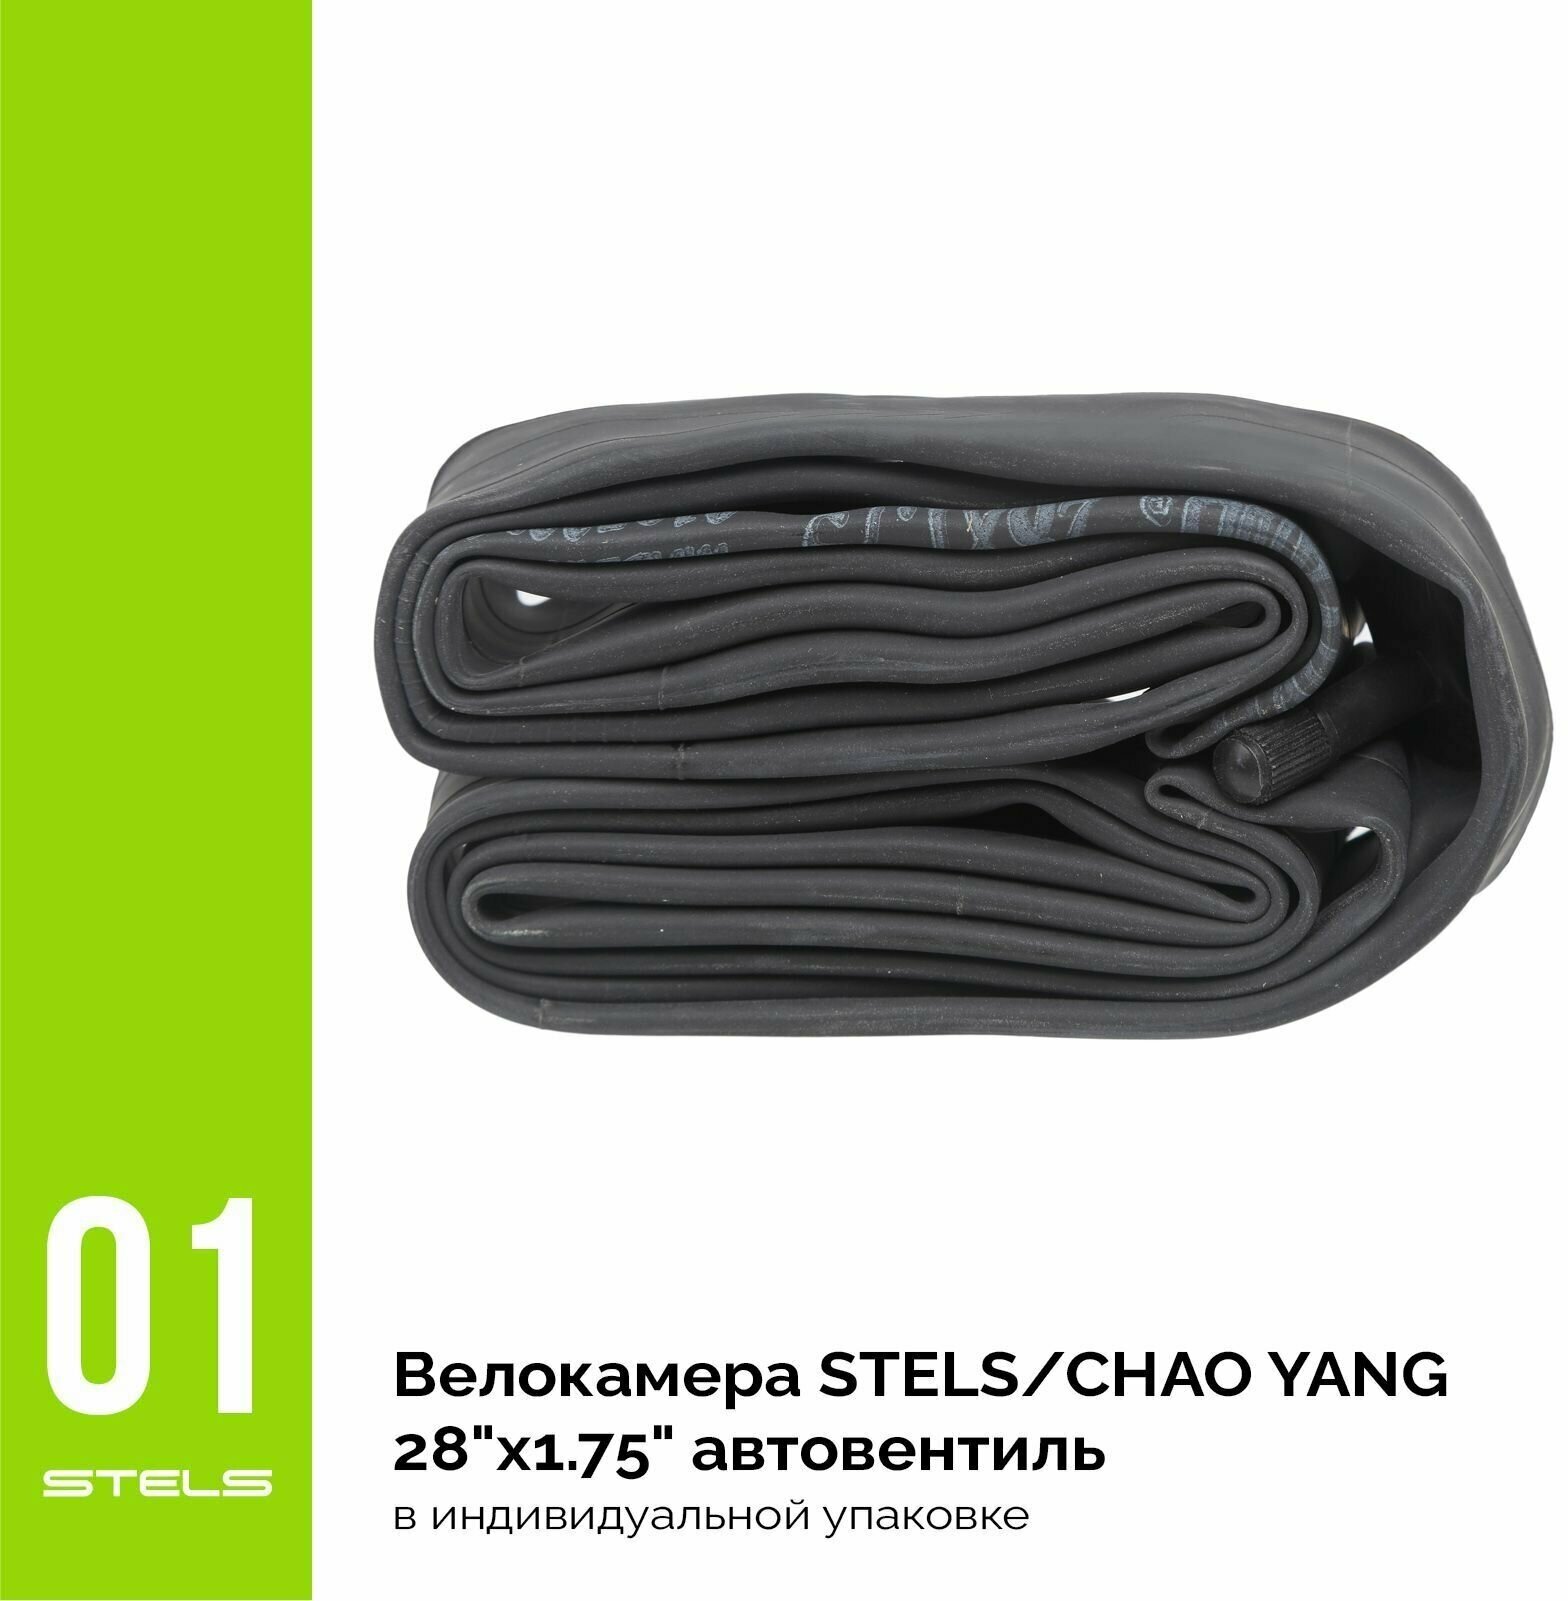 Велокамера STELS/CHAO YANG 28"x1.75" автониппель, в индивидуальной упаковке SuperHIT+